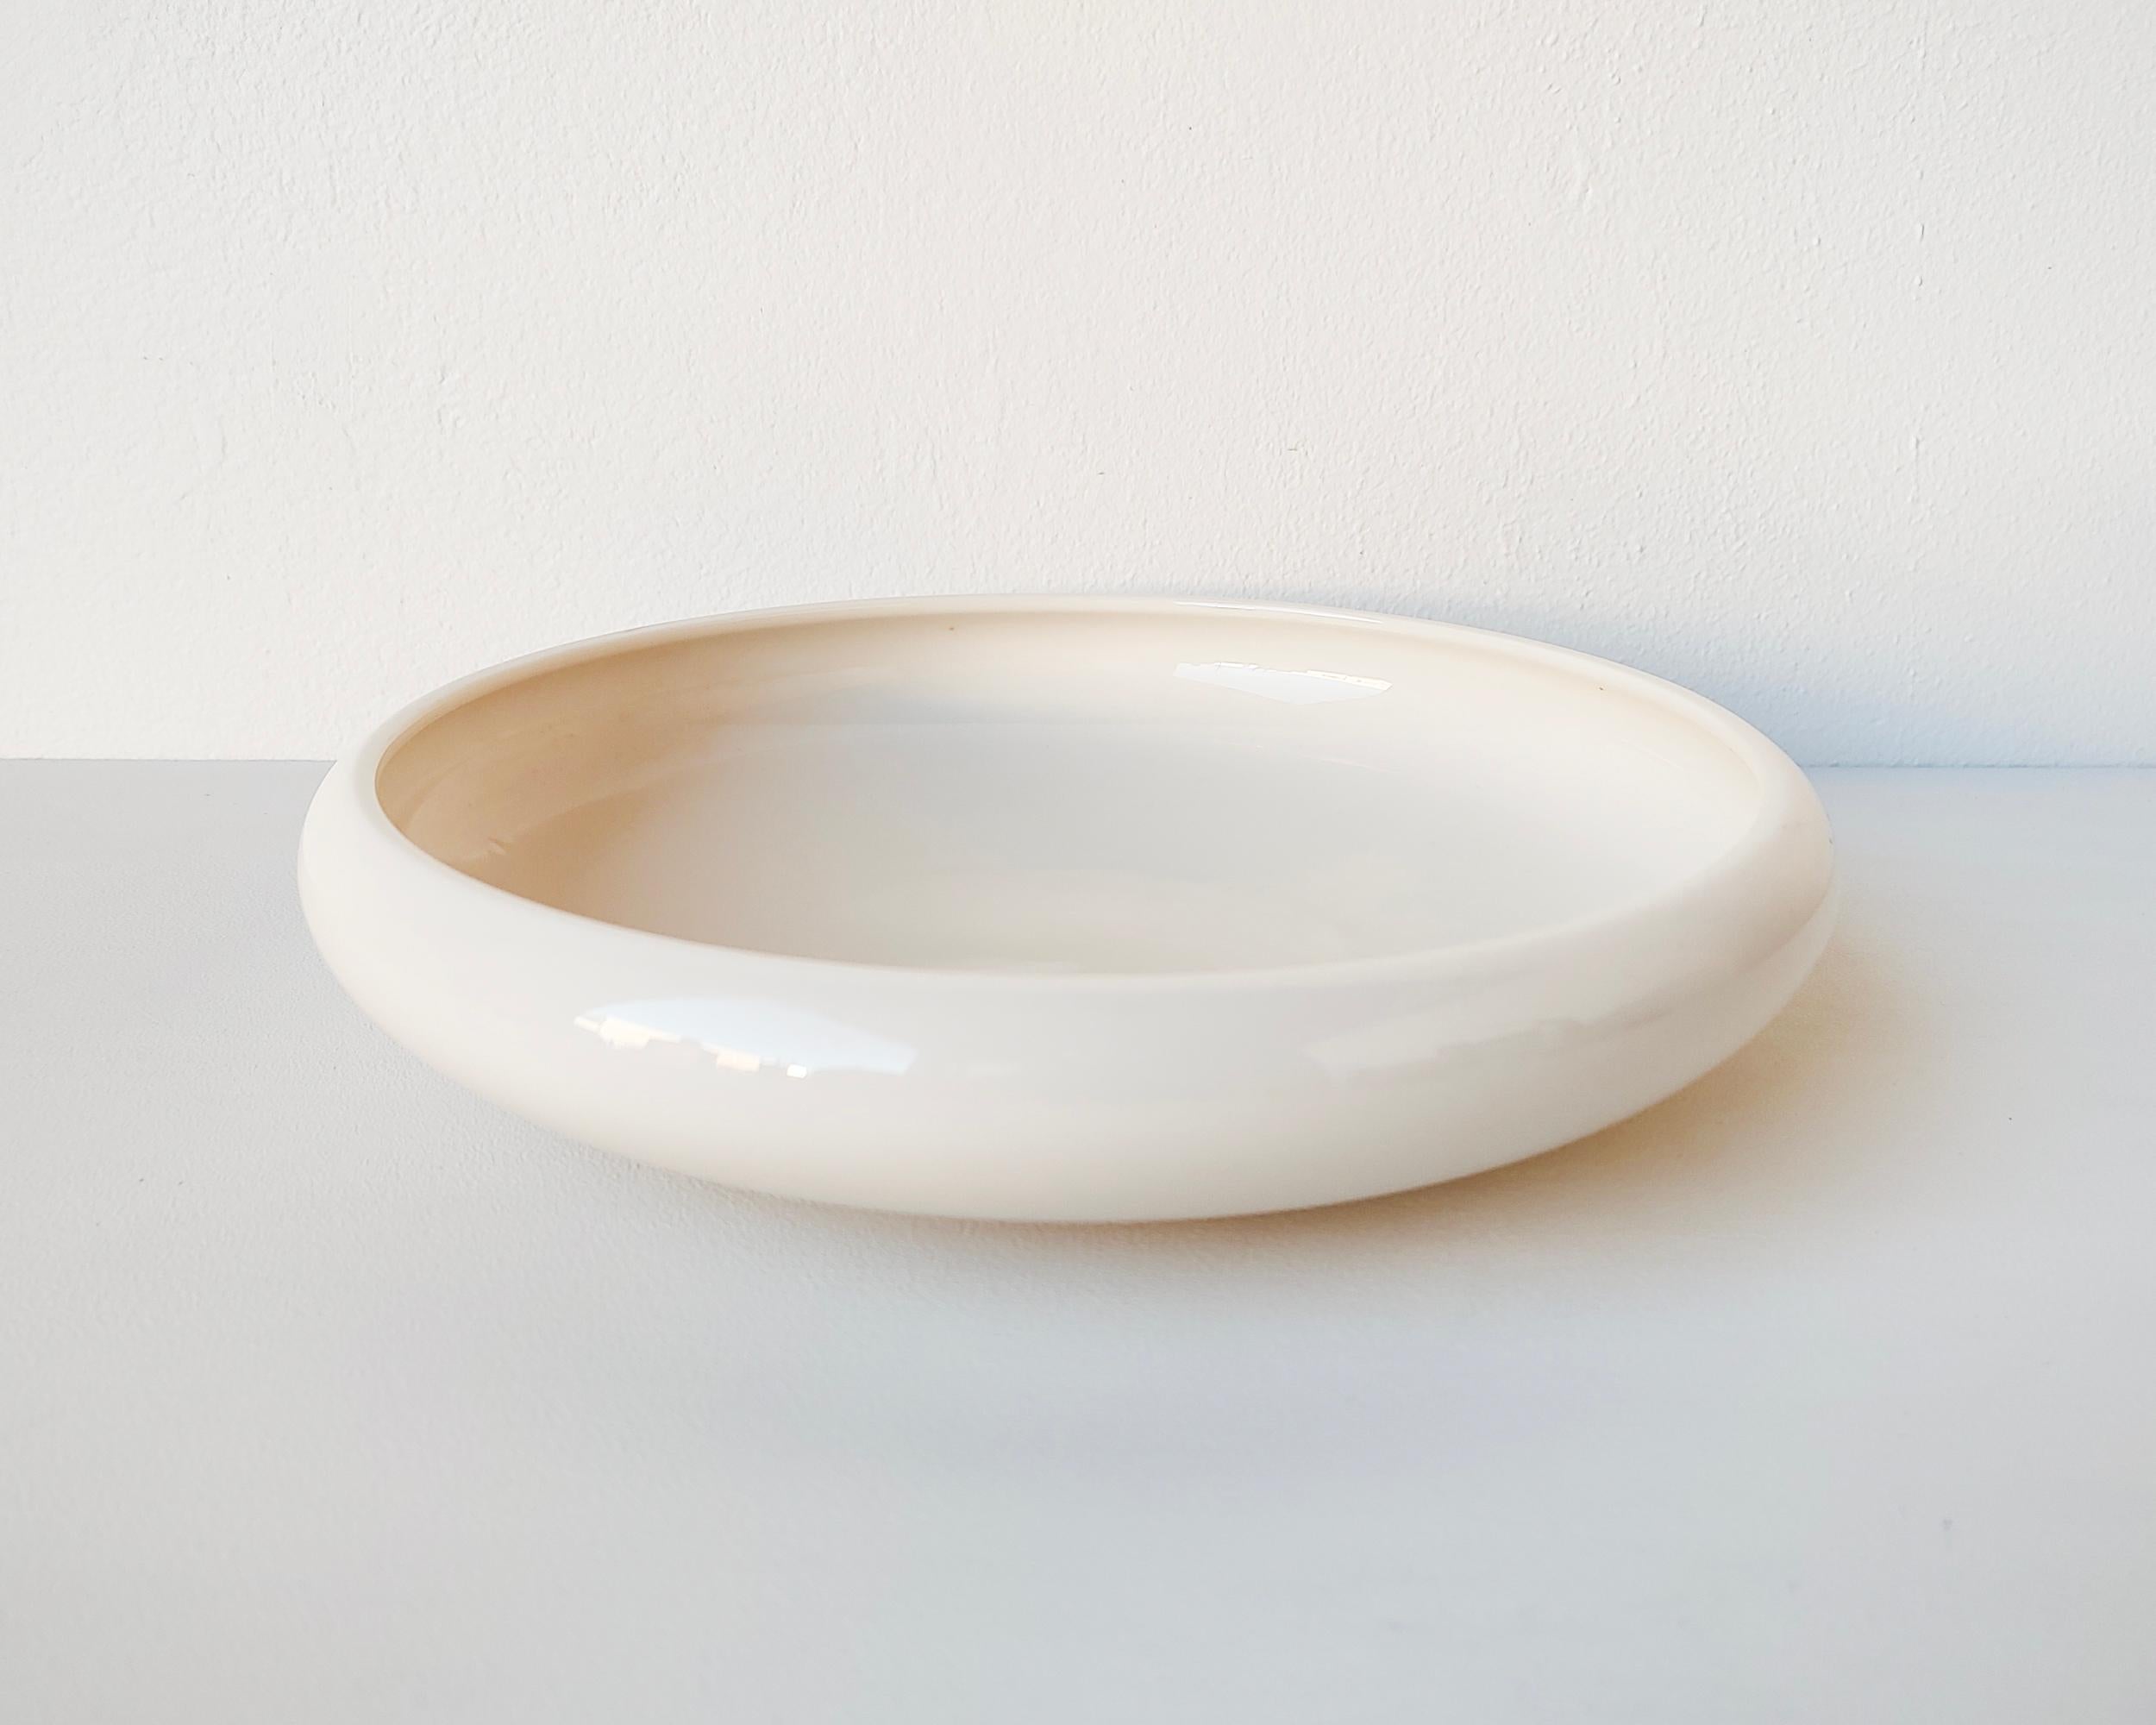 Minimalist 1930s Porcelain Ceramic Shallow Serving Decorative Bowl by Lenox For Sale